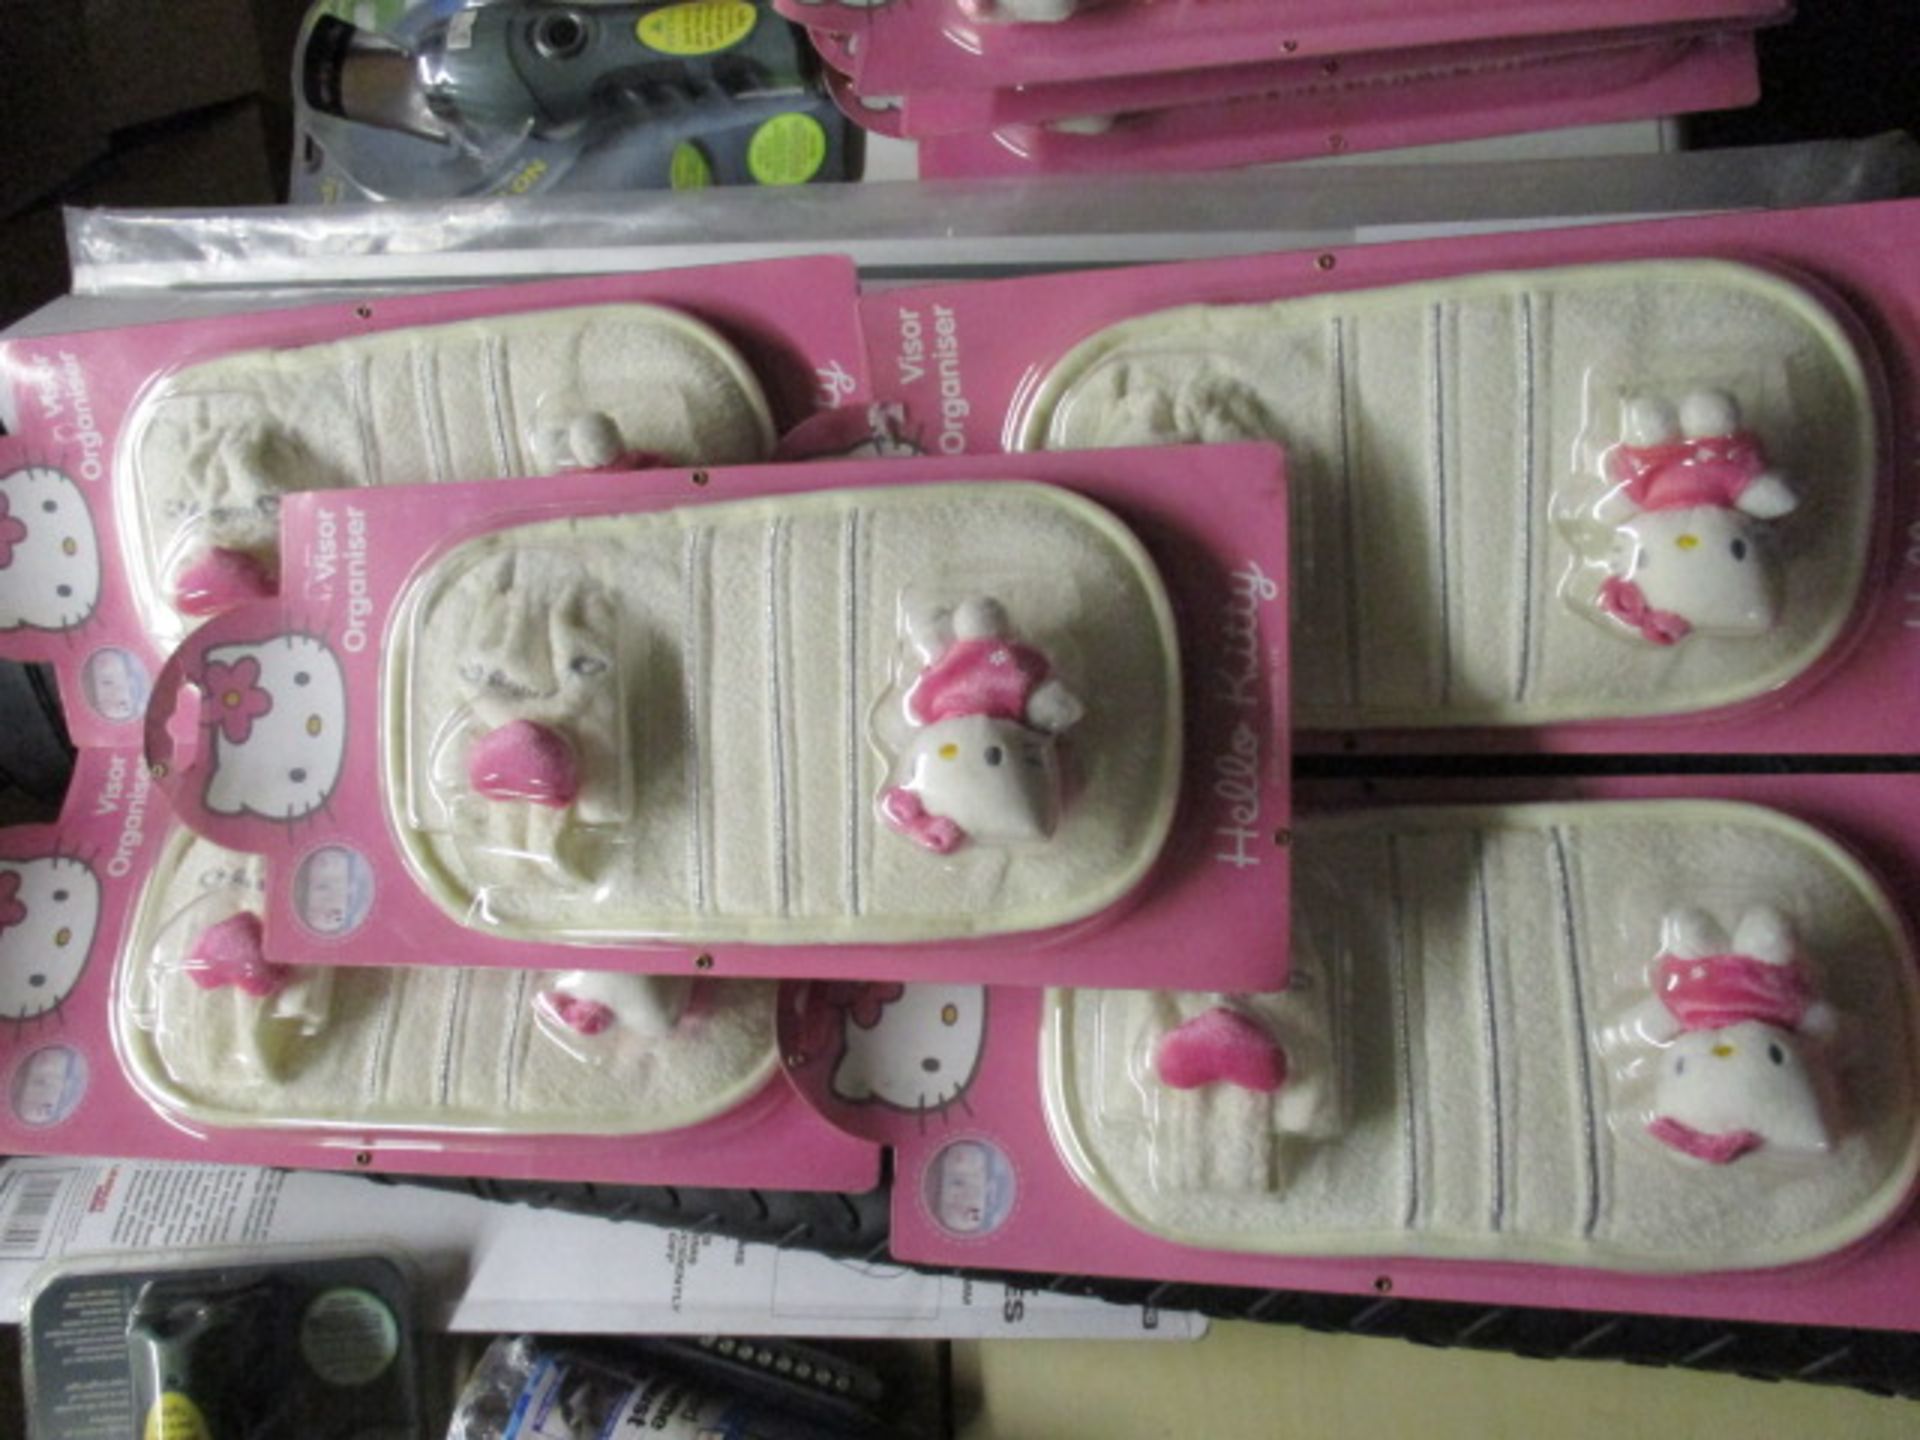 5pcs Hello Kitty Visor holders new and boxed